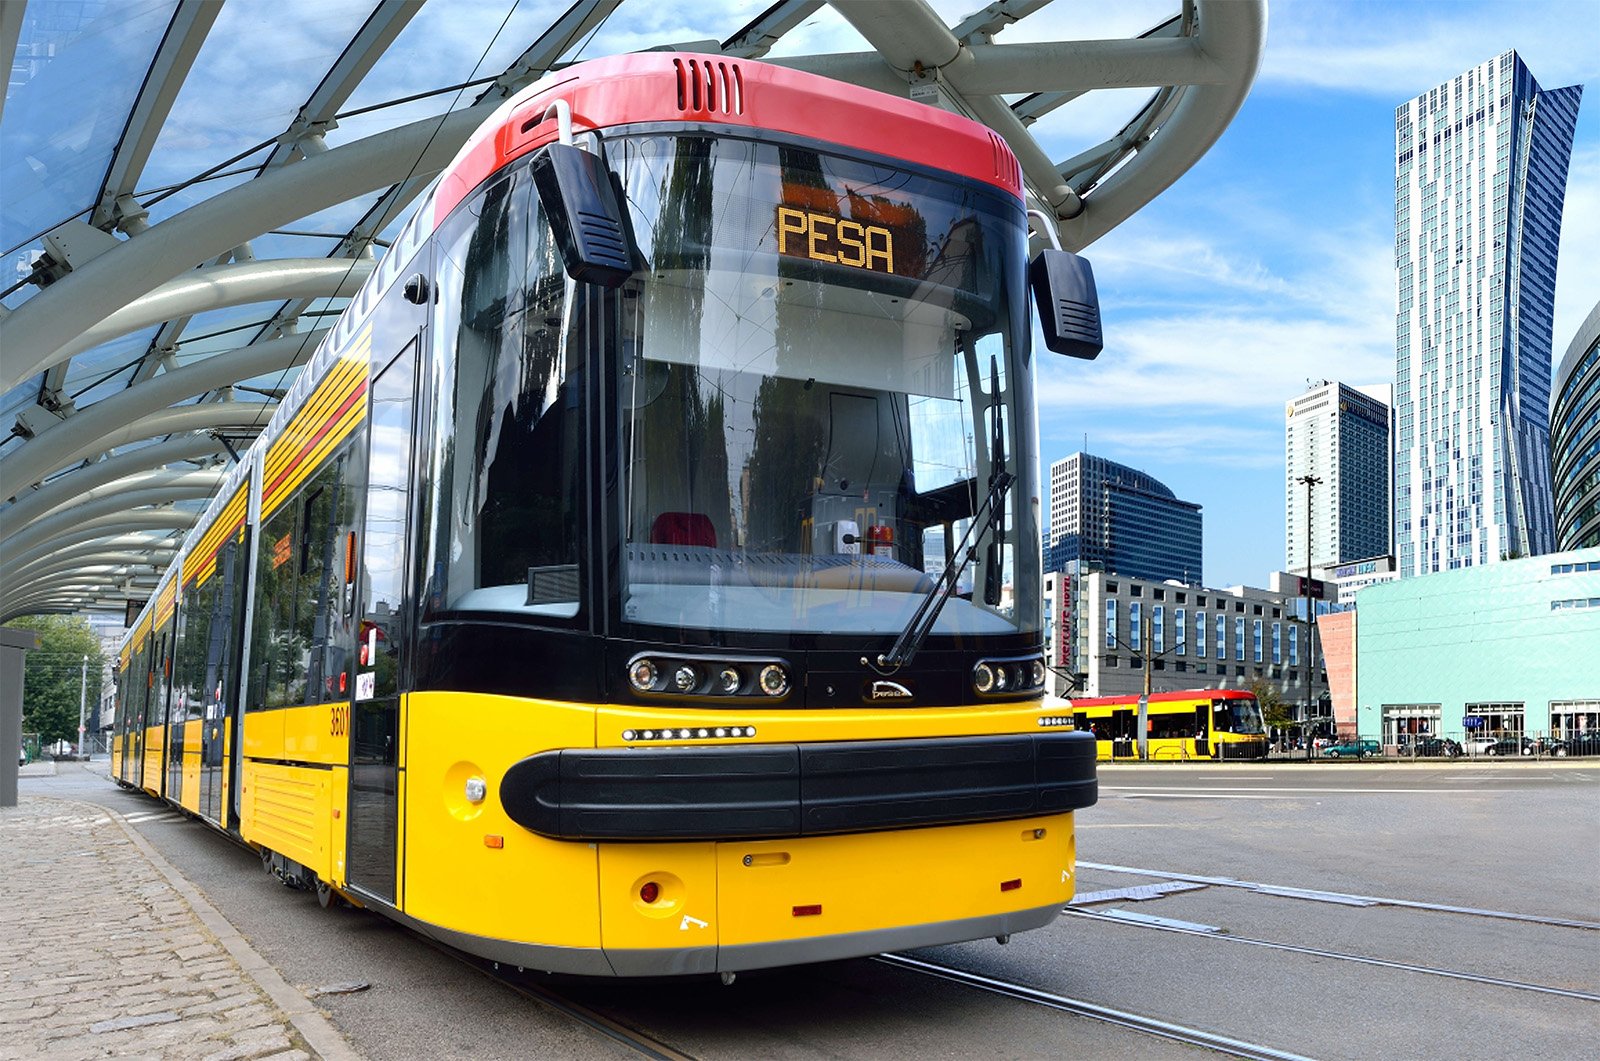  EXCLUSIV: Noile tramvaie care vor circula prin Iaşi ar putea fi livrate de polonezii de la PESA